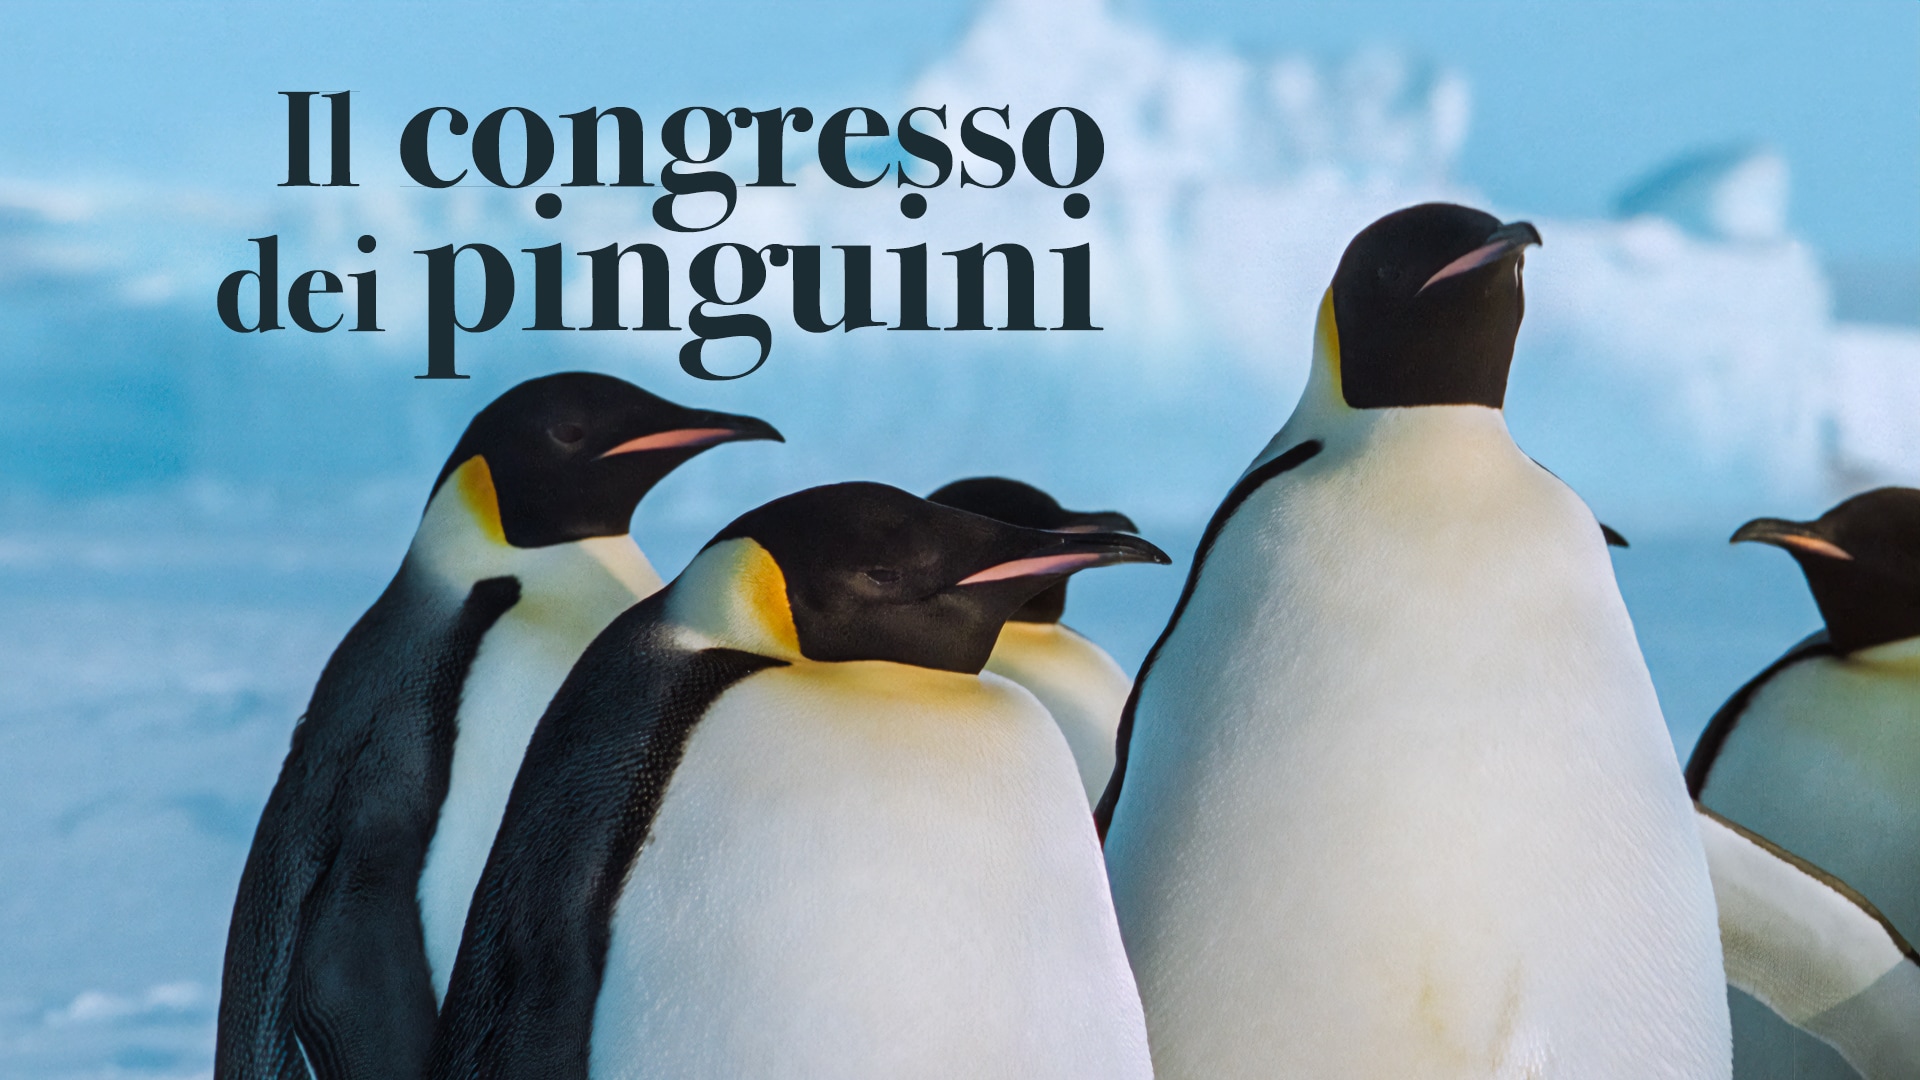 Il congresso dei pinguini